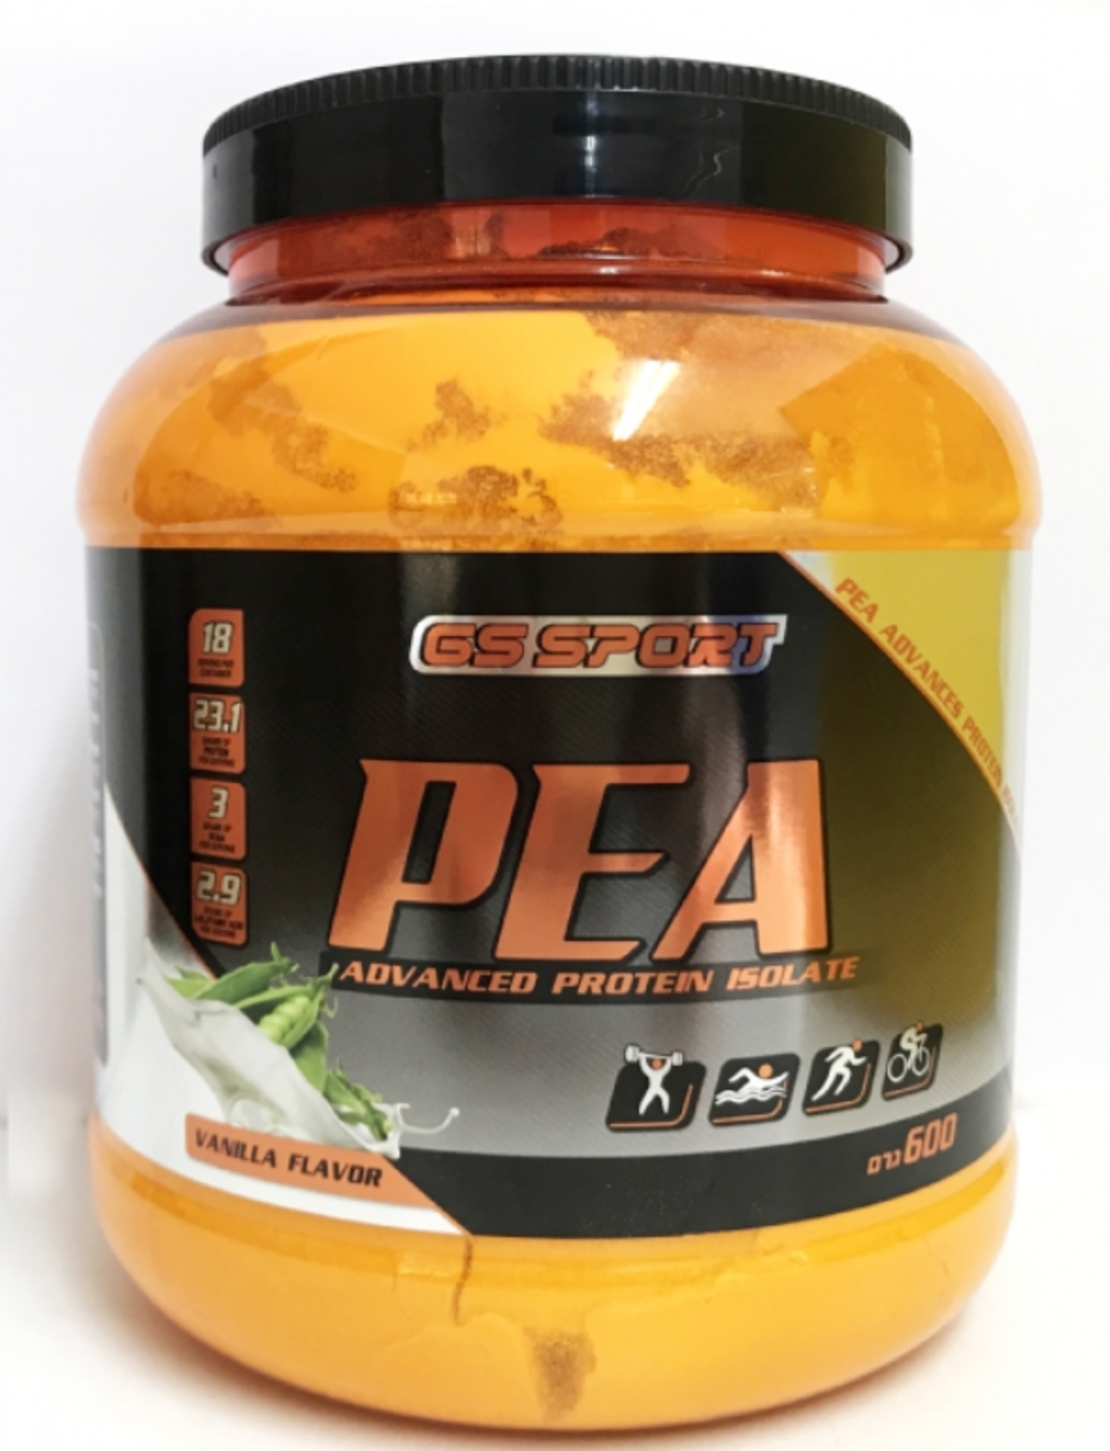 ג'י אס ספורט - אבקת חלבון אפונה מבודד GS Sport Pea Advanced Protein Isolate